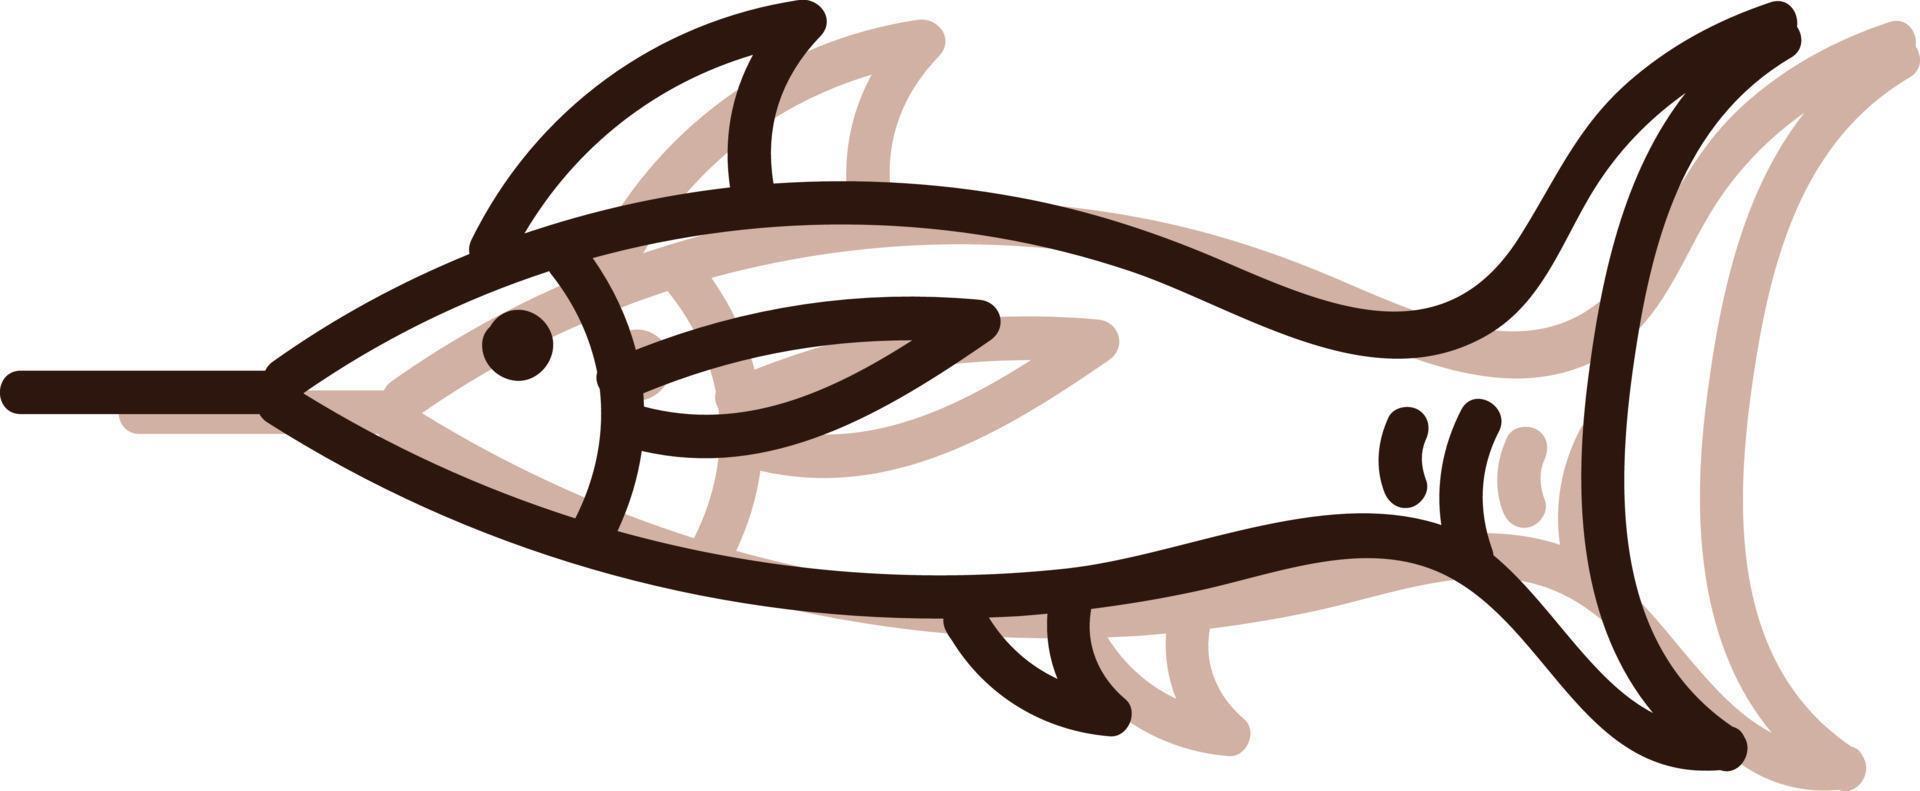 Seefisch mit Spitznase, Illustration, Vektor auf weißem Hintergrund.